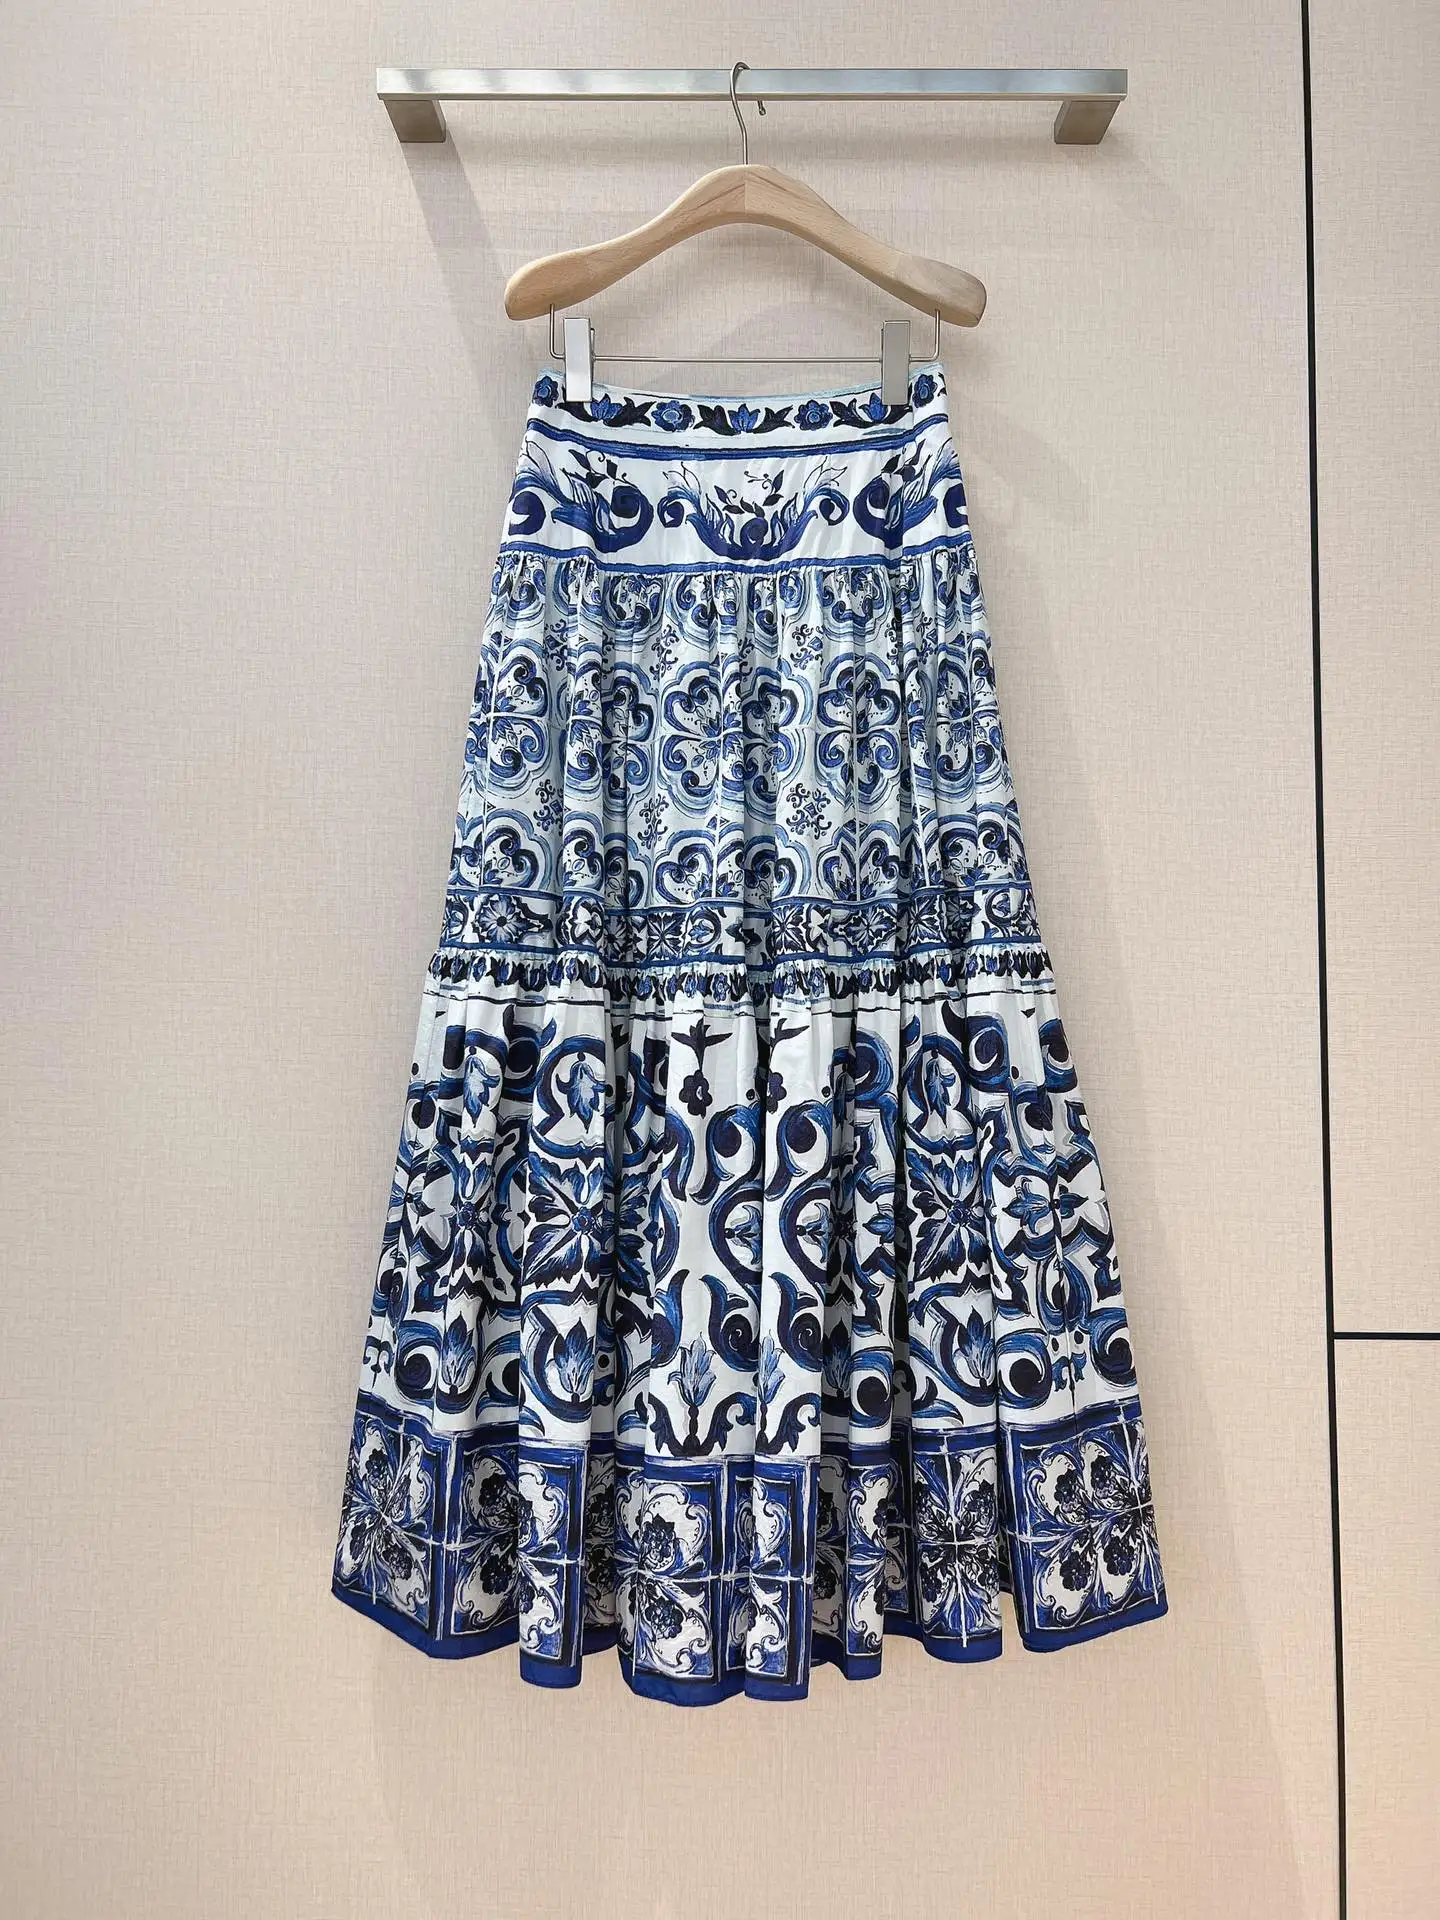 

Женская хлопковая юбка с принтом, сине-белая юбка с фарфоровым принтом в богемном стиле, элегантная подиумная дизайнерская юбка для пляжа и ...